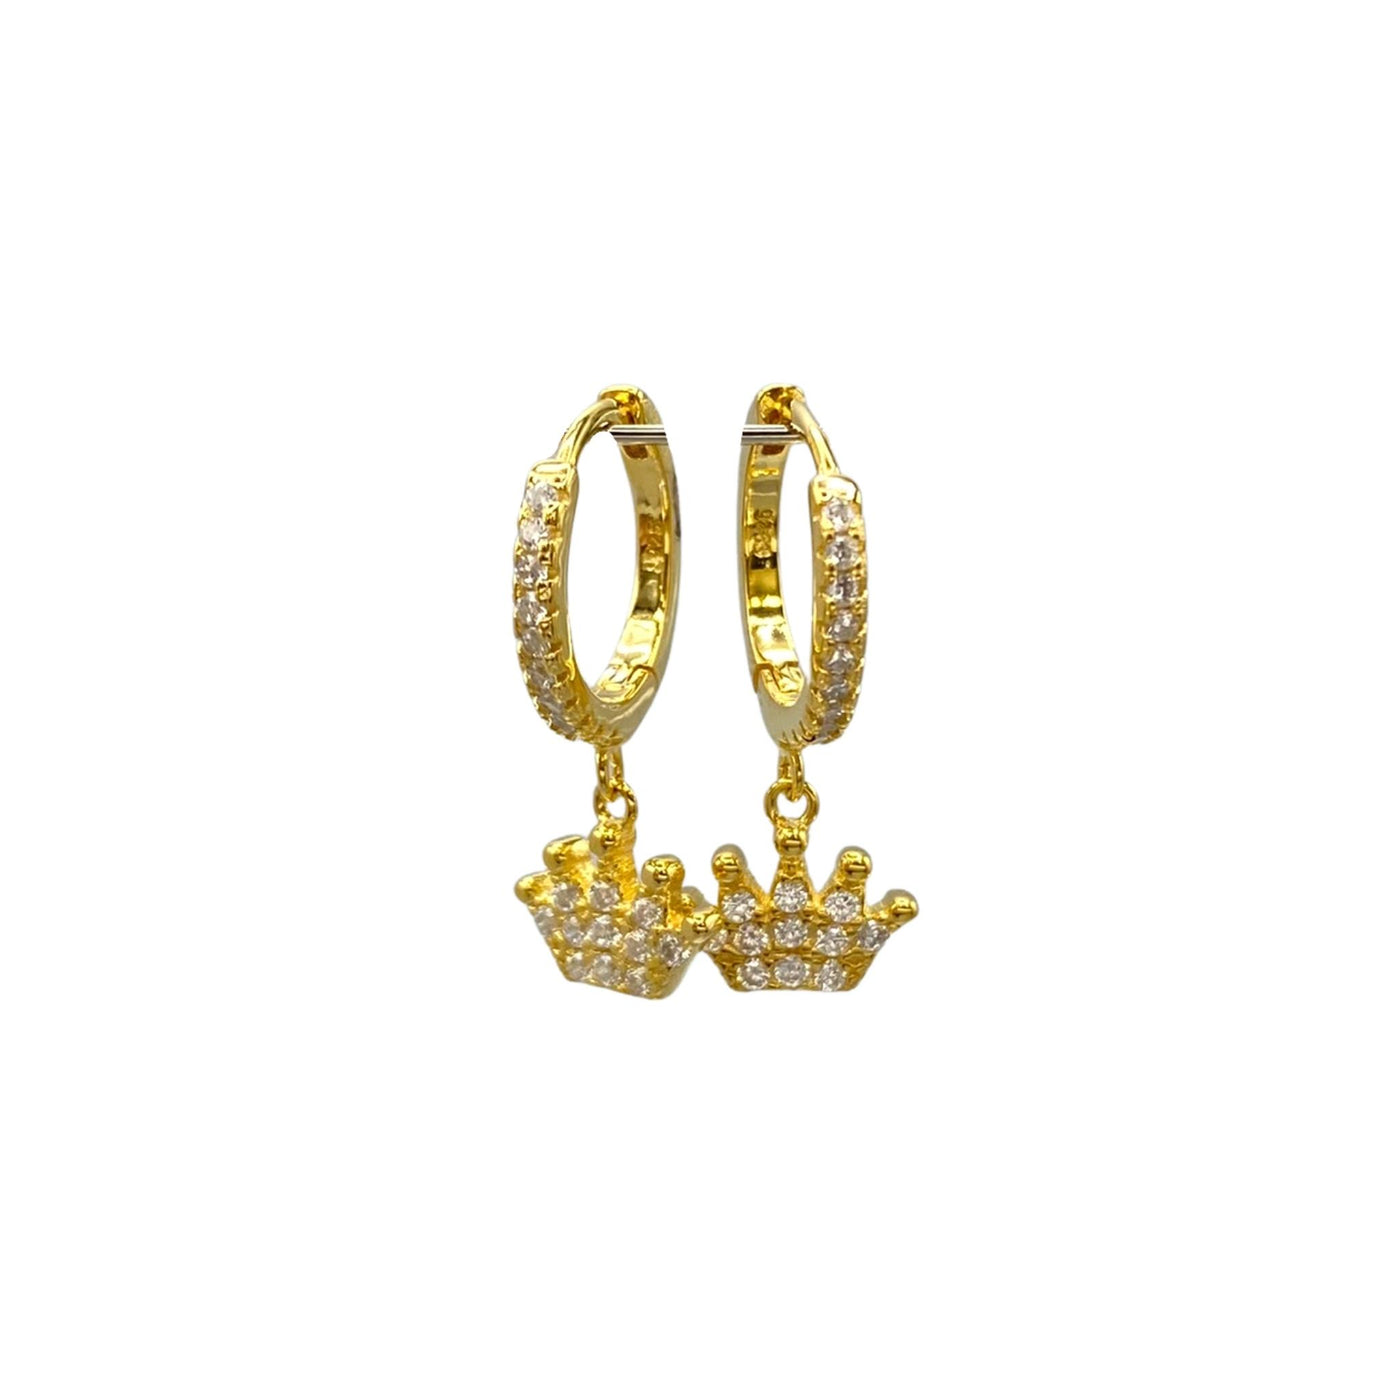 Silver hoop earrings with crown charms